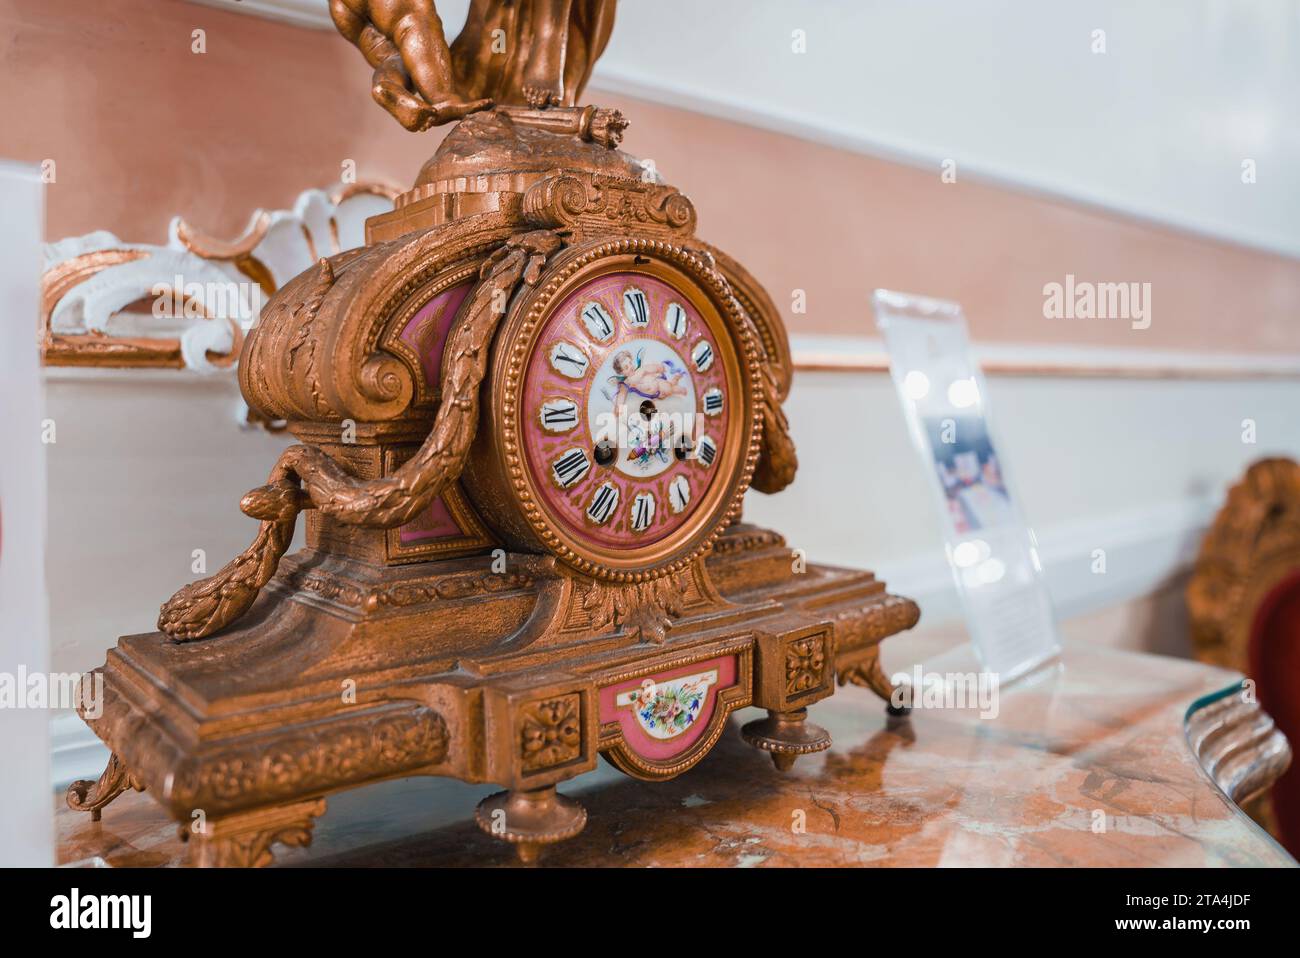 Elegantes traditionelles Wohnzimmer mit kunstvoll verzierten braunen und goldenen Uhr auf Marmortisch. Stockfoto